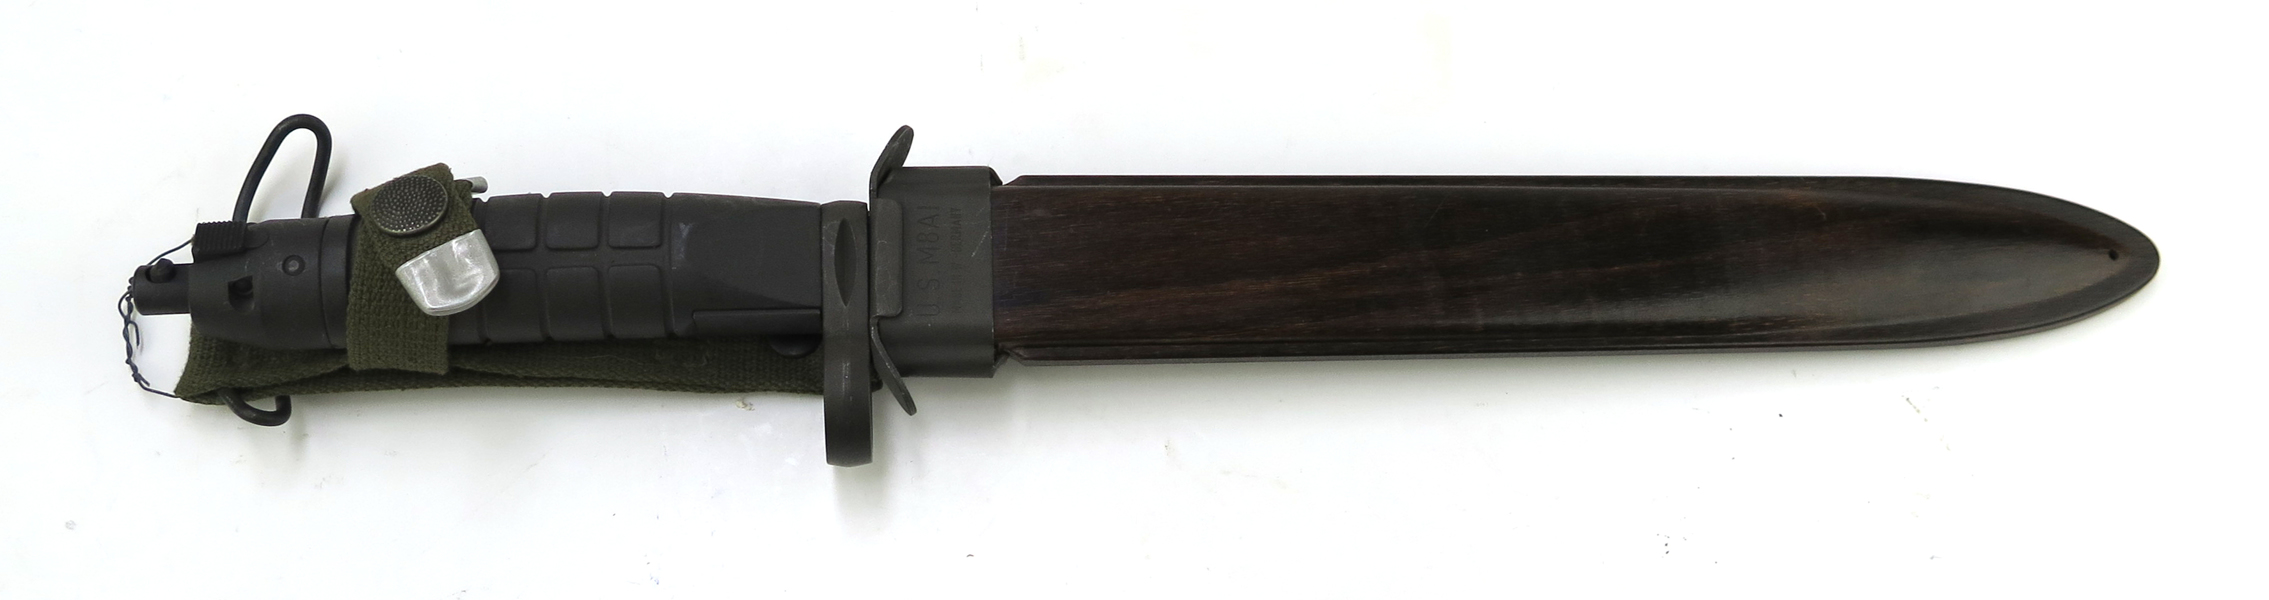 Knivbajonett i balja, Danmark variant av M/75 för gevär M/75 (AG3), i balja USM8A1, _18985a_8da3a574395e295_lg.jpeg